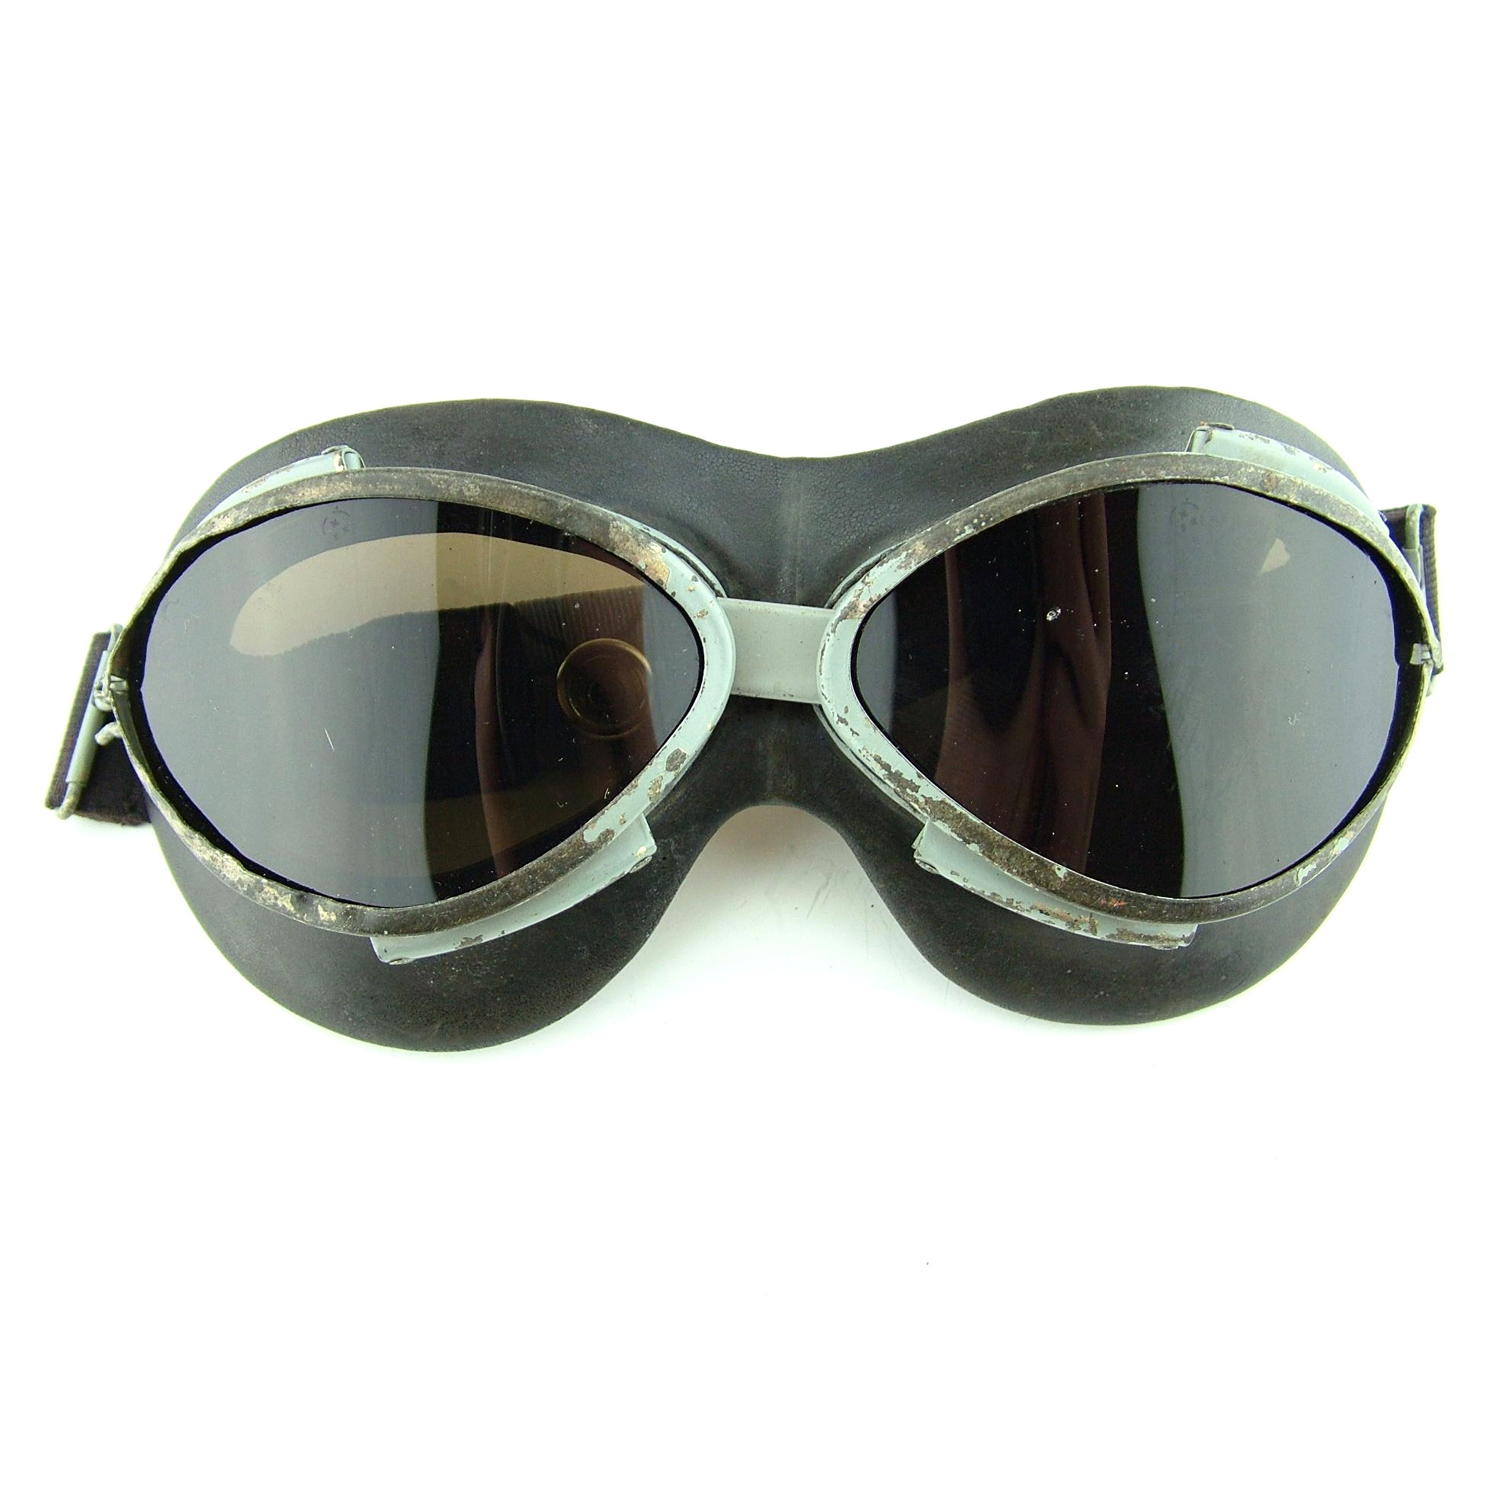 RAF STAD1963 flying goggles